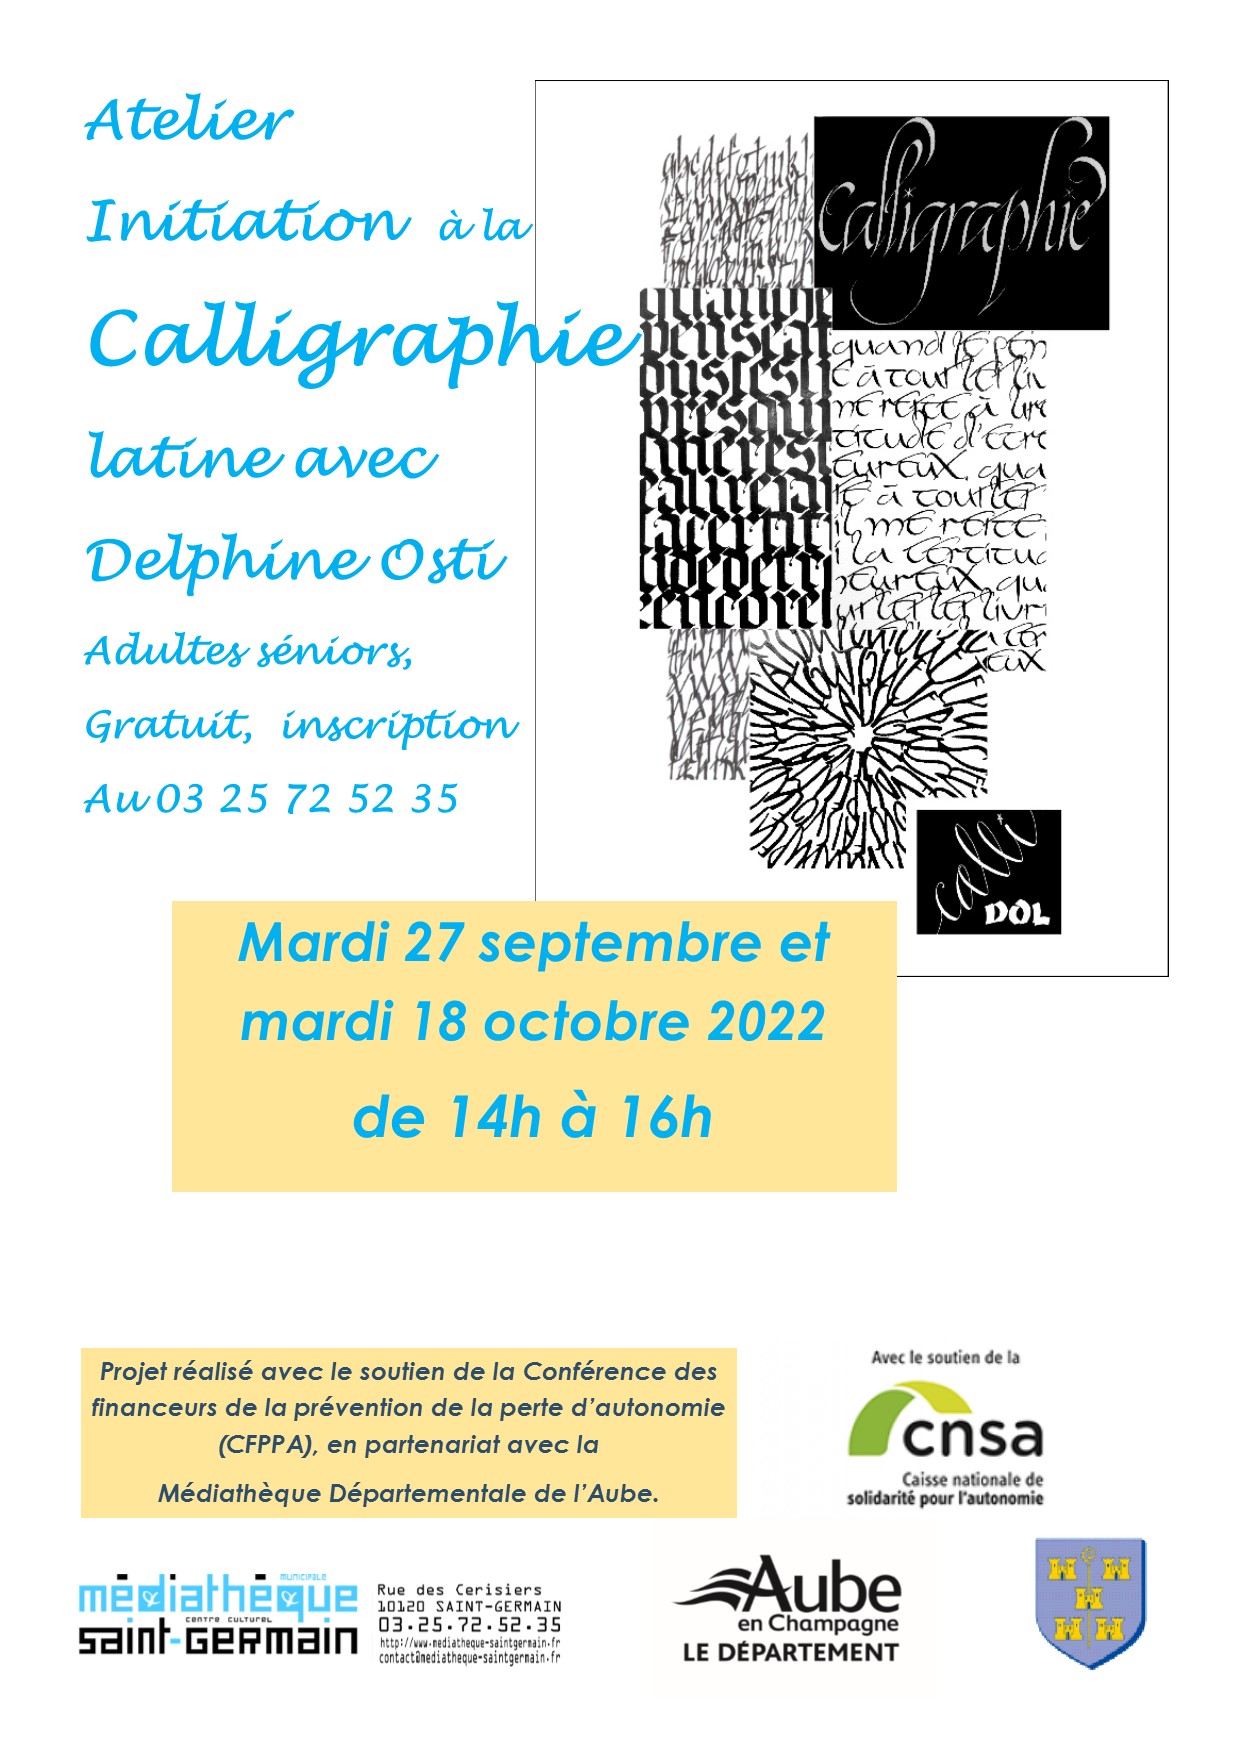 Atelier Initiation à la Calligraphie le 27 septembre et le 18 octobre 2022